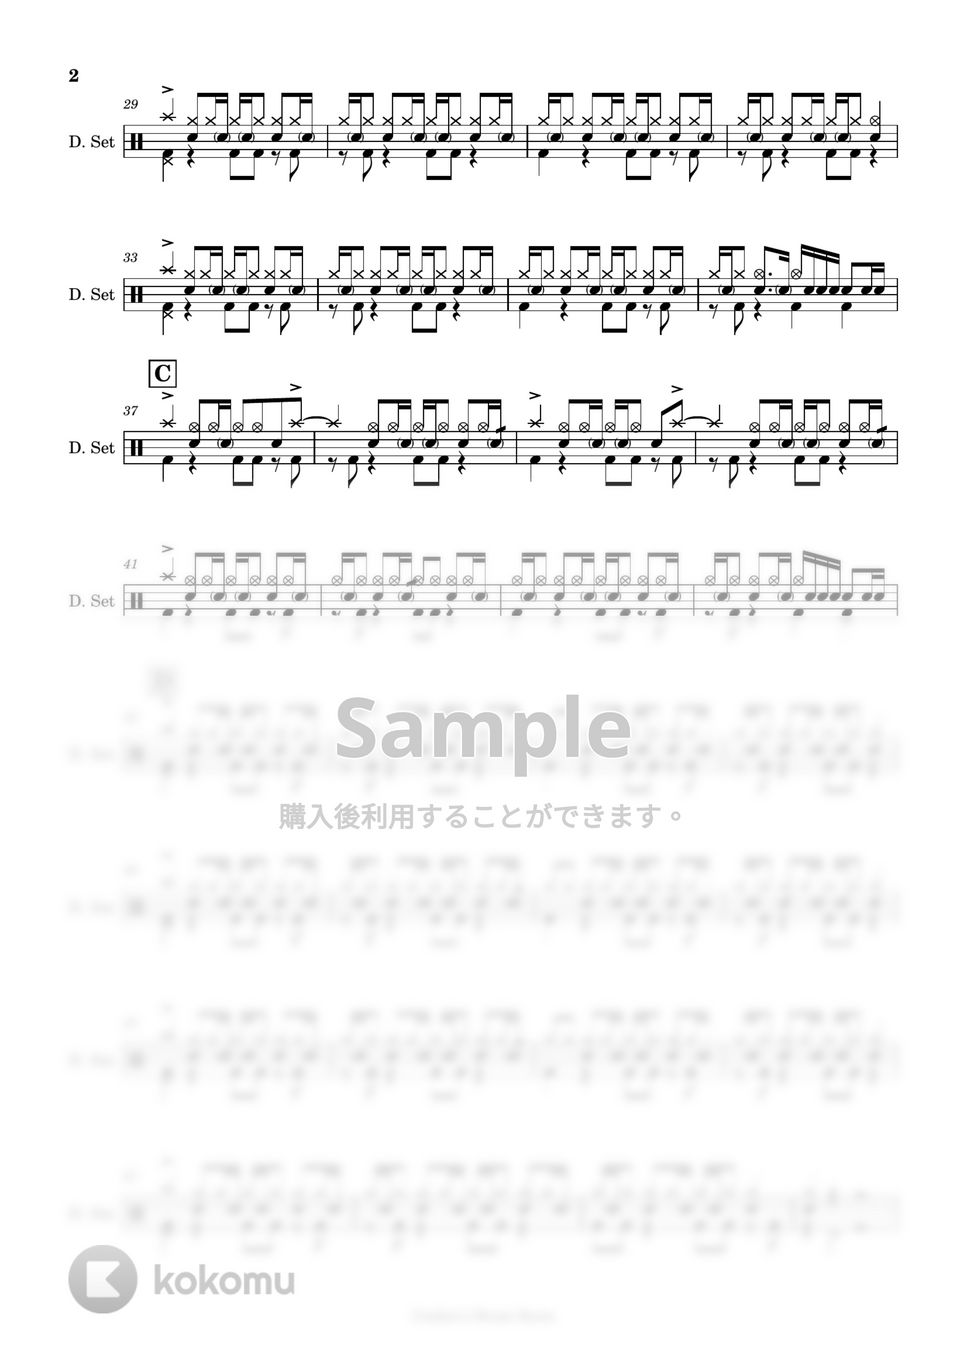 クリープハイプ - 【ドラム楽譜】 おやすみ泣き声、さよなら歌姫 / クリープハイプ - Oyasumi nakigoe, sayonara utahime / CreepHyp 【DrumScore】 by Cookie's Drum Score